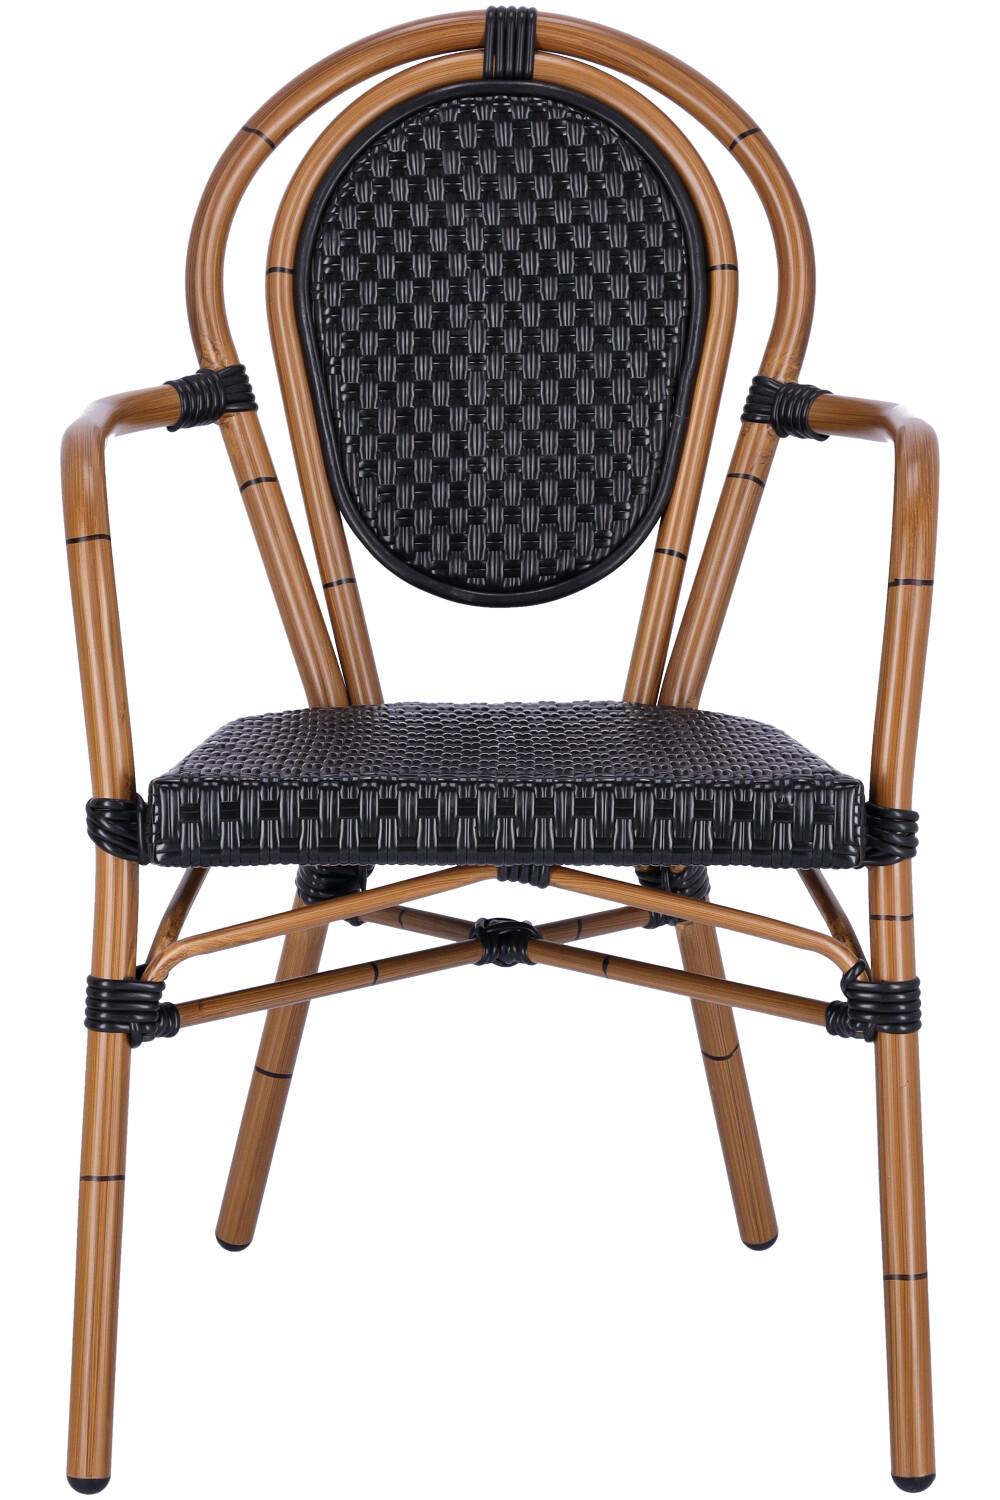 Abbildung arm chair Marco Vorderansicht